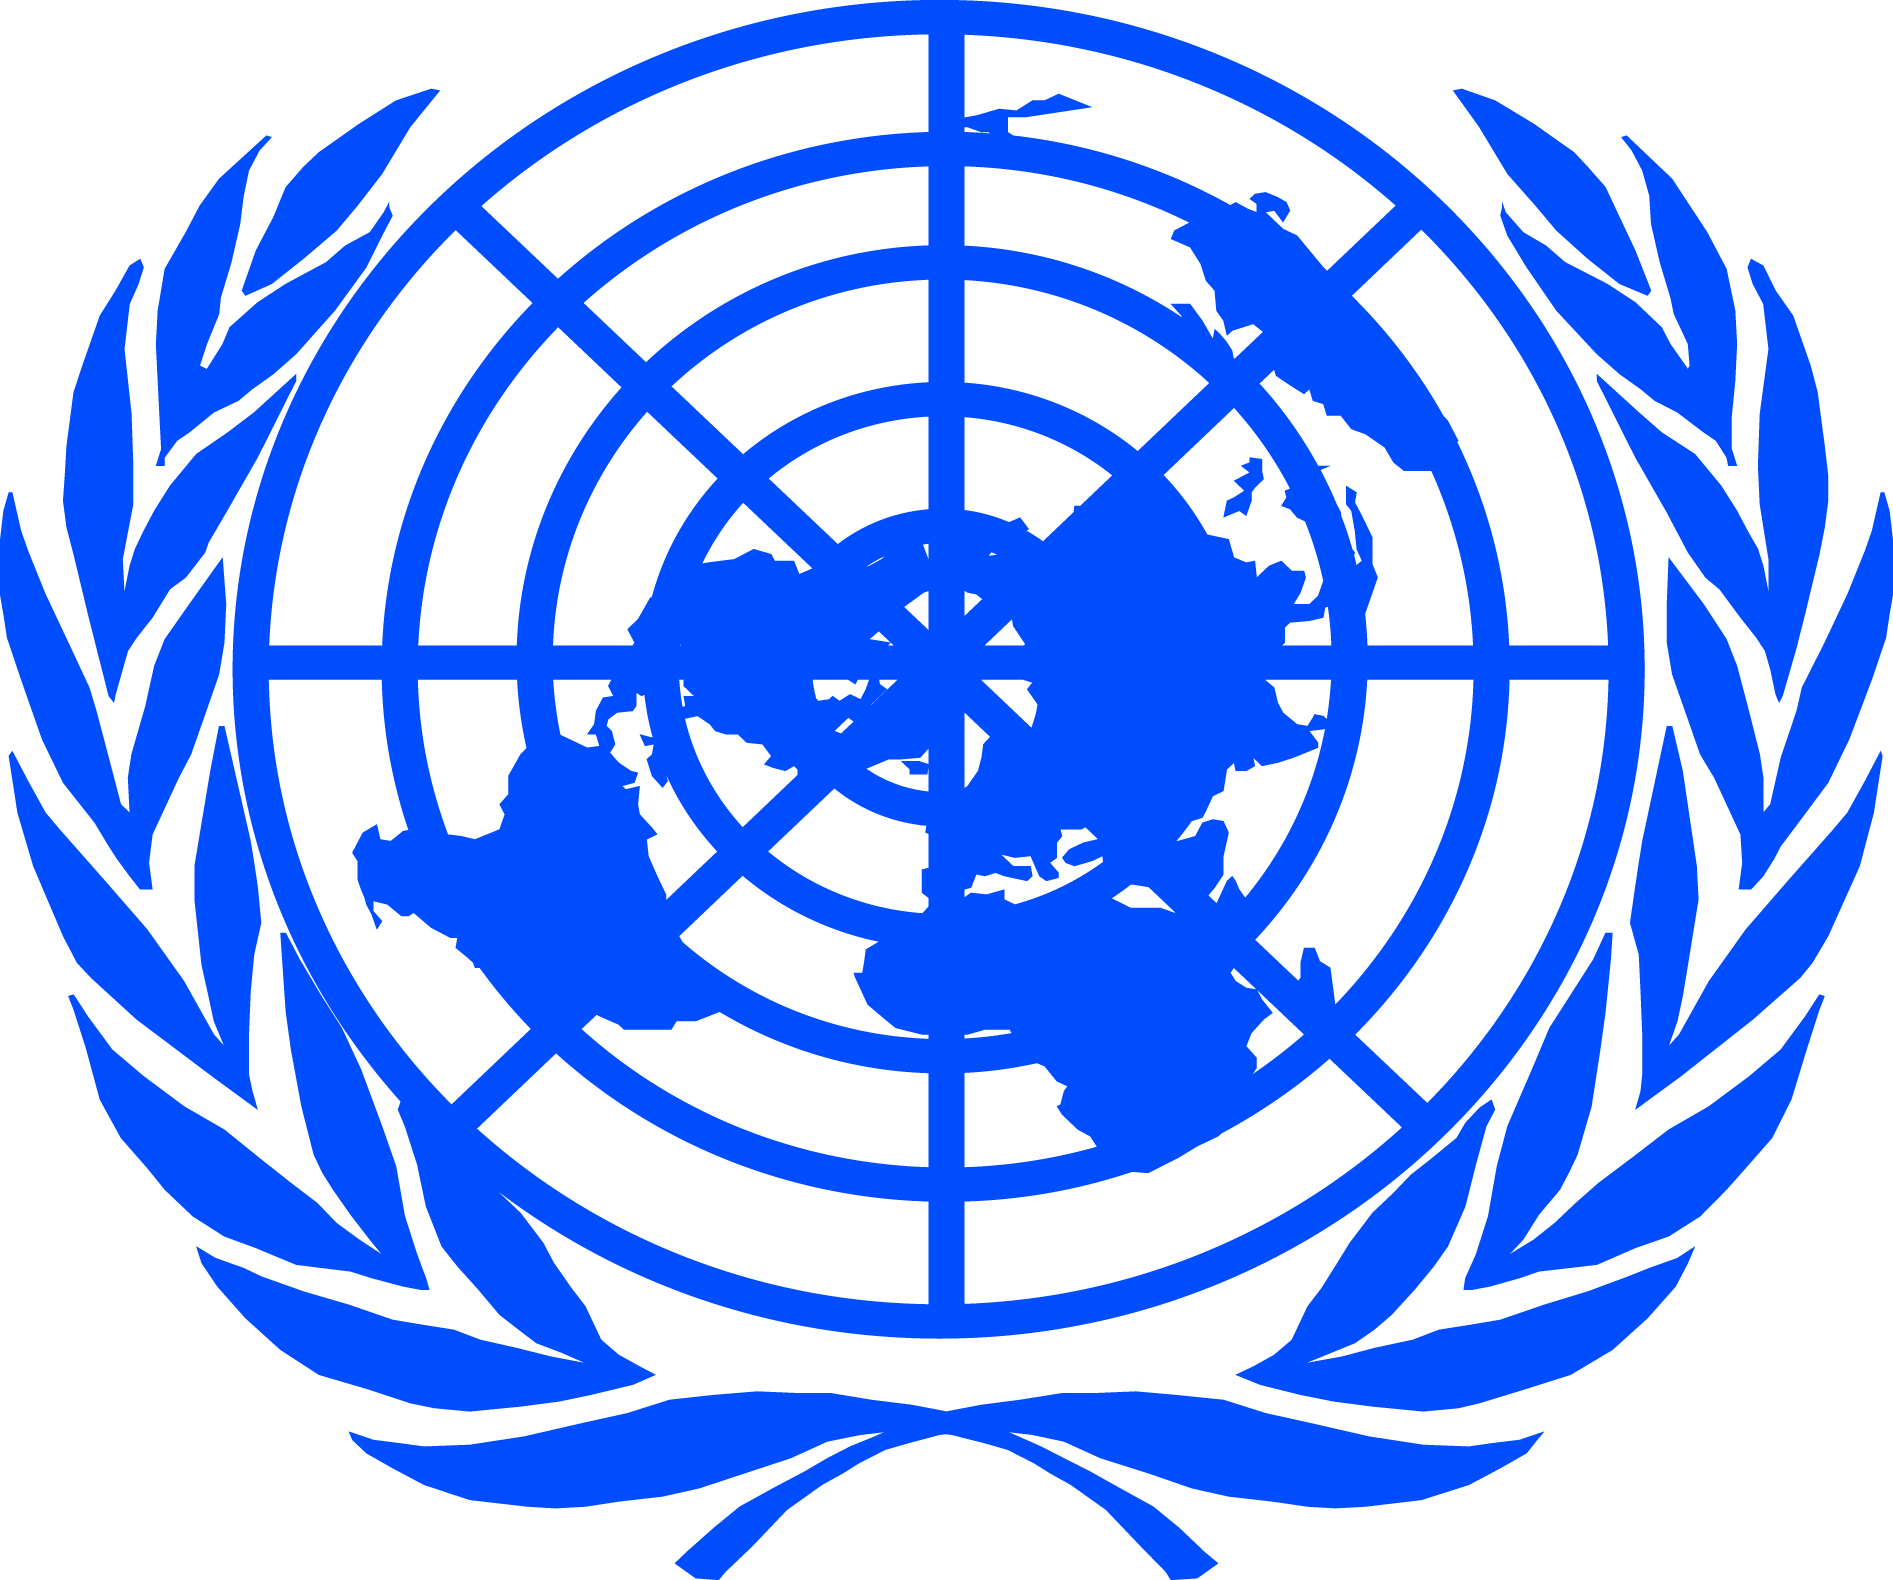 Оон без. Всемирная организация ООН. Международные организации ООН. Организация Объединенных наций (ООН). Совет безопасности ООН флаг.